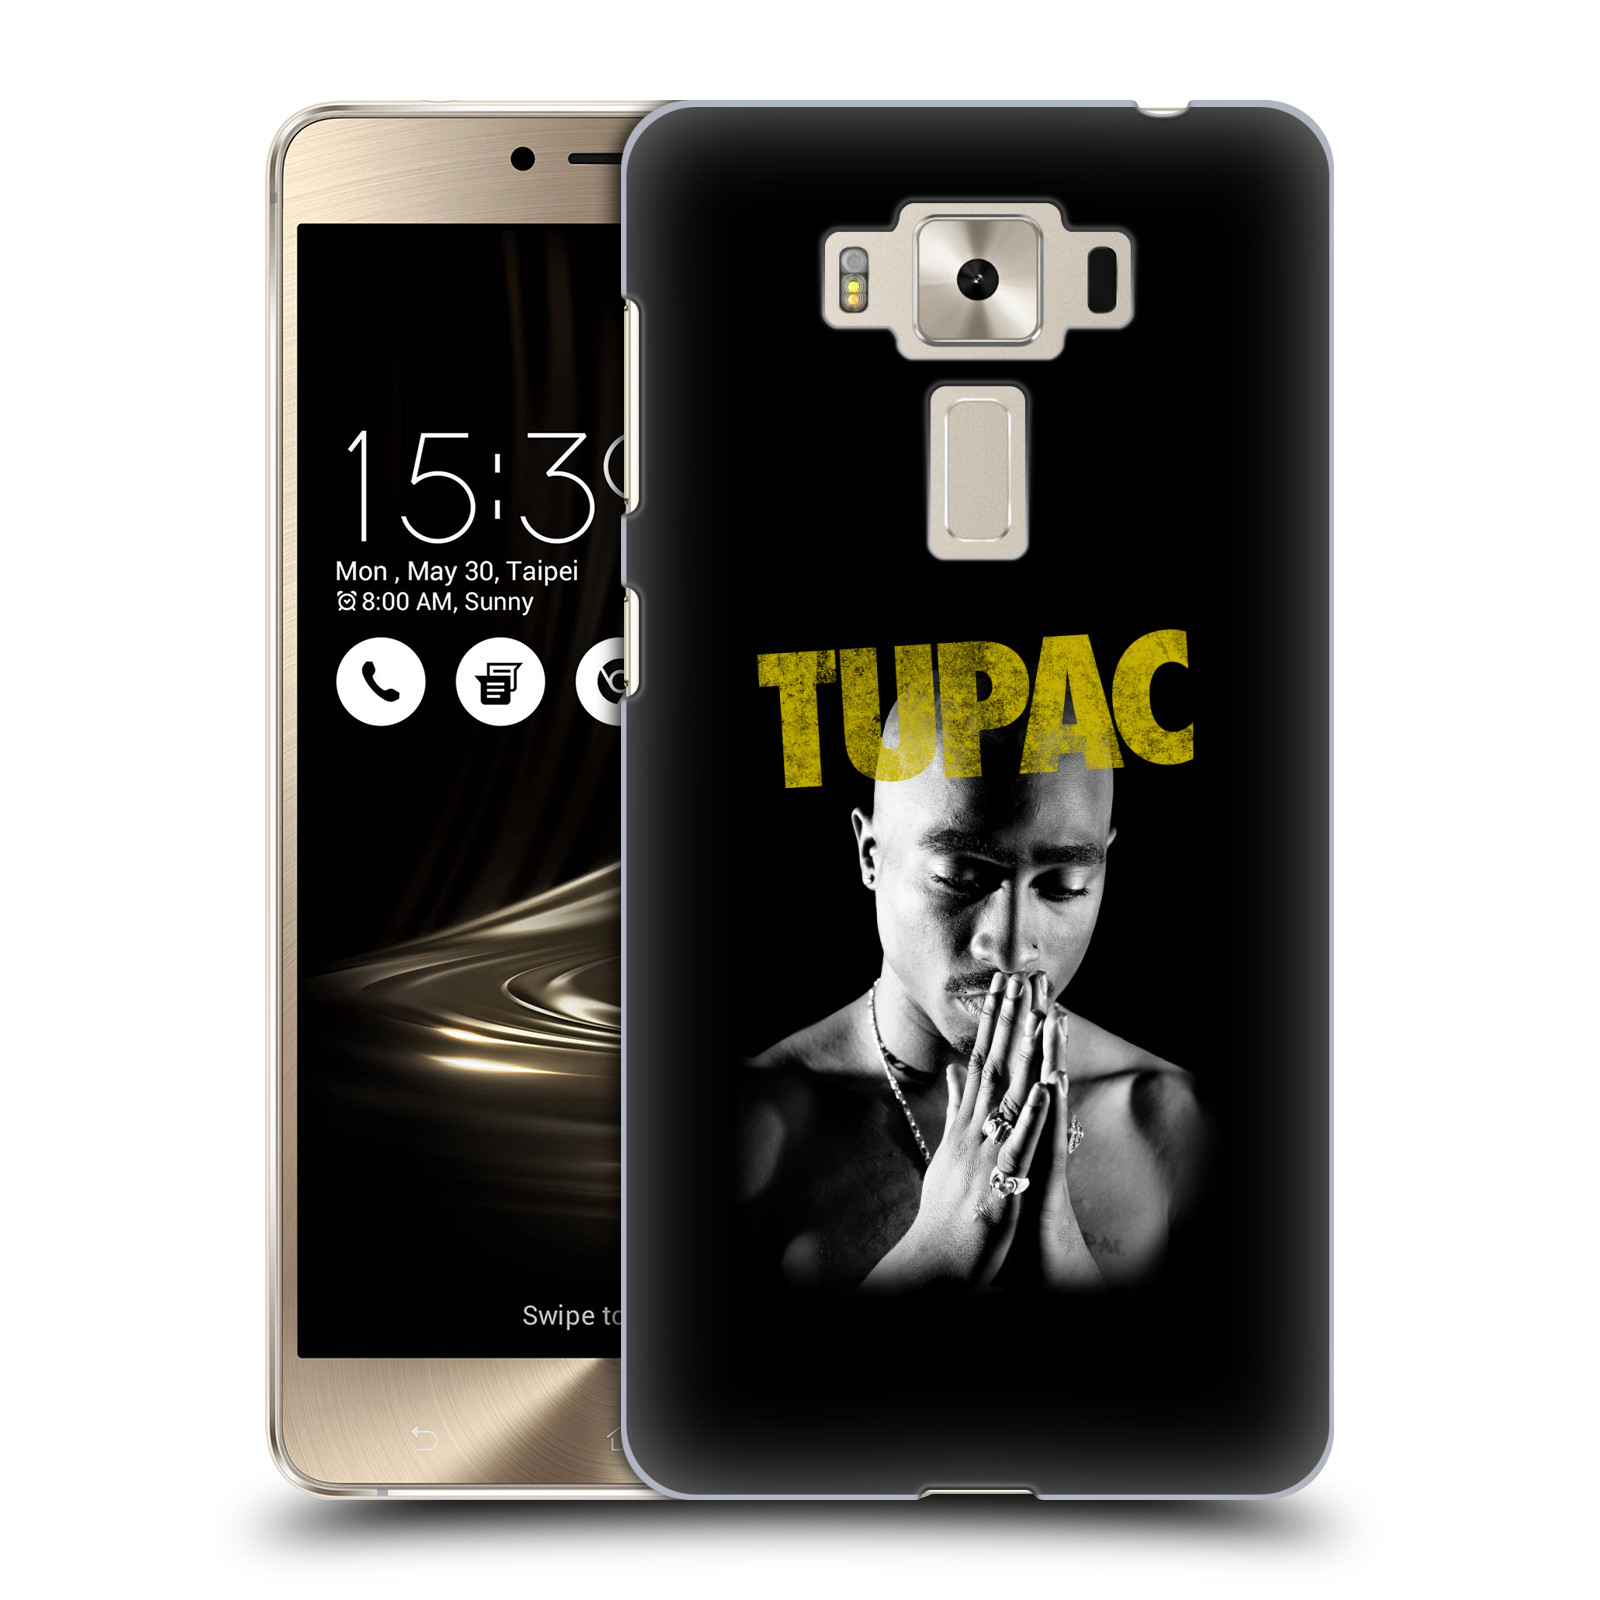 HEAD CASE plastový obal na mobil Asus Zenfone 3 DELUXE ZS550KL Zpěvák rapper Tupac Shakur 2Pac zlatý nadpis